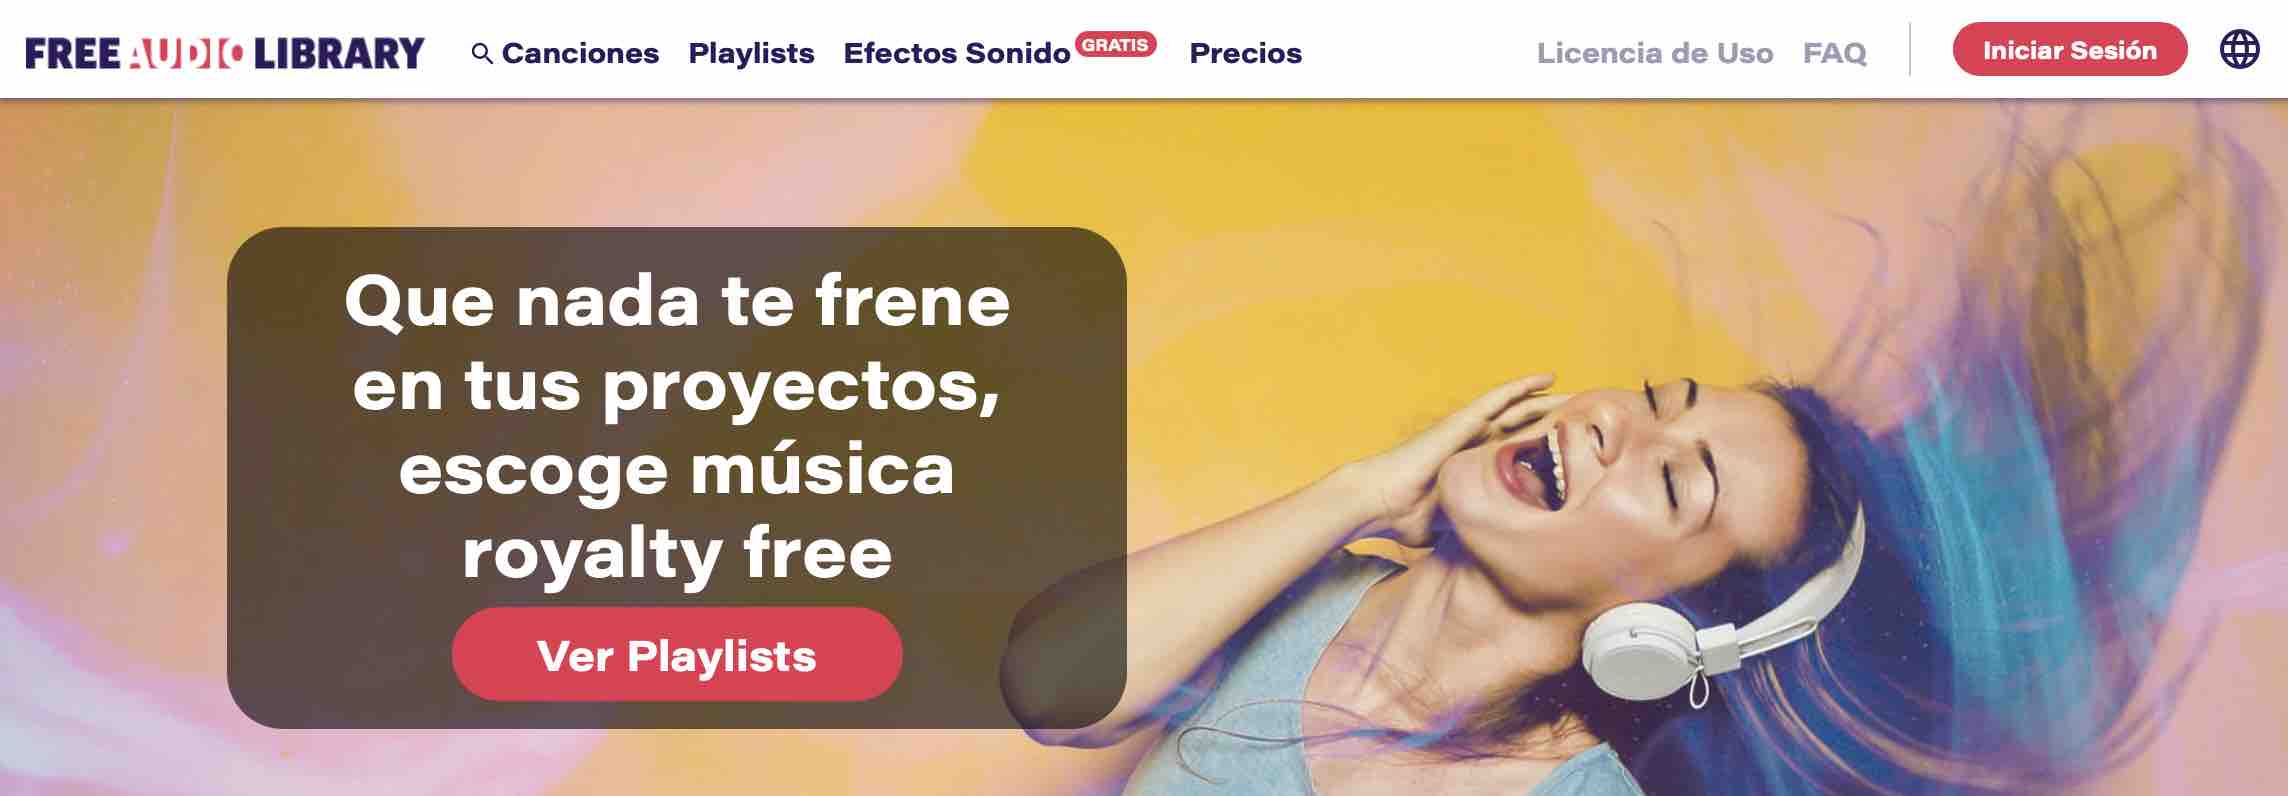 Banco de musica libre de derechos: Freeaudiolibrary